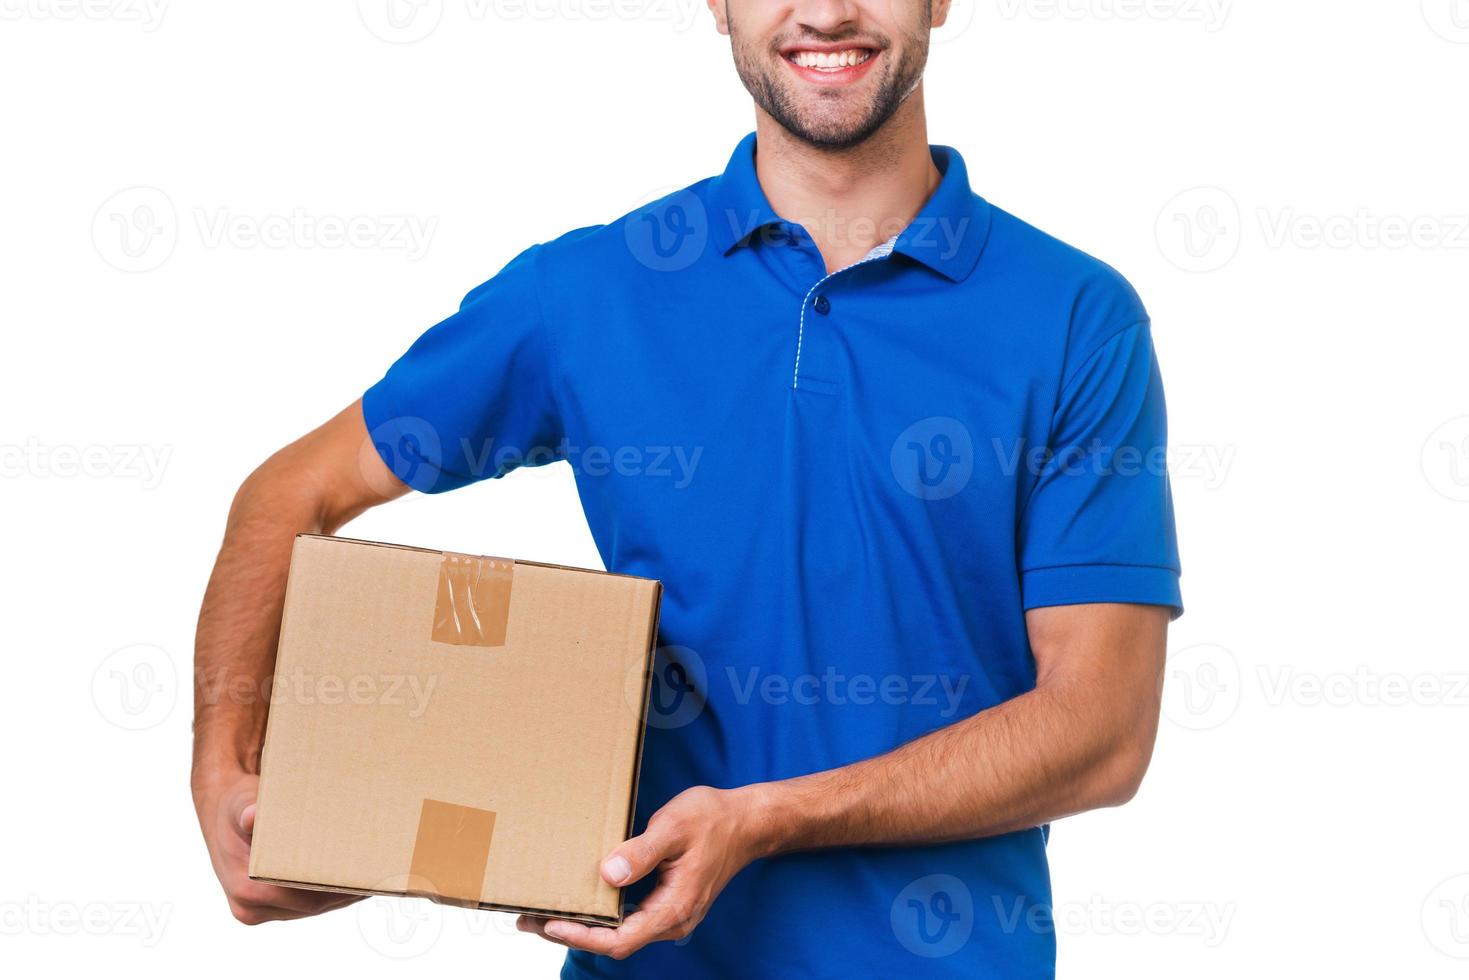 votre colis est entre de bonnes mains. image recadrée d'un jeune coursier tenant une boîte en carton et souriant en se tenant debout sur fond blanc photo